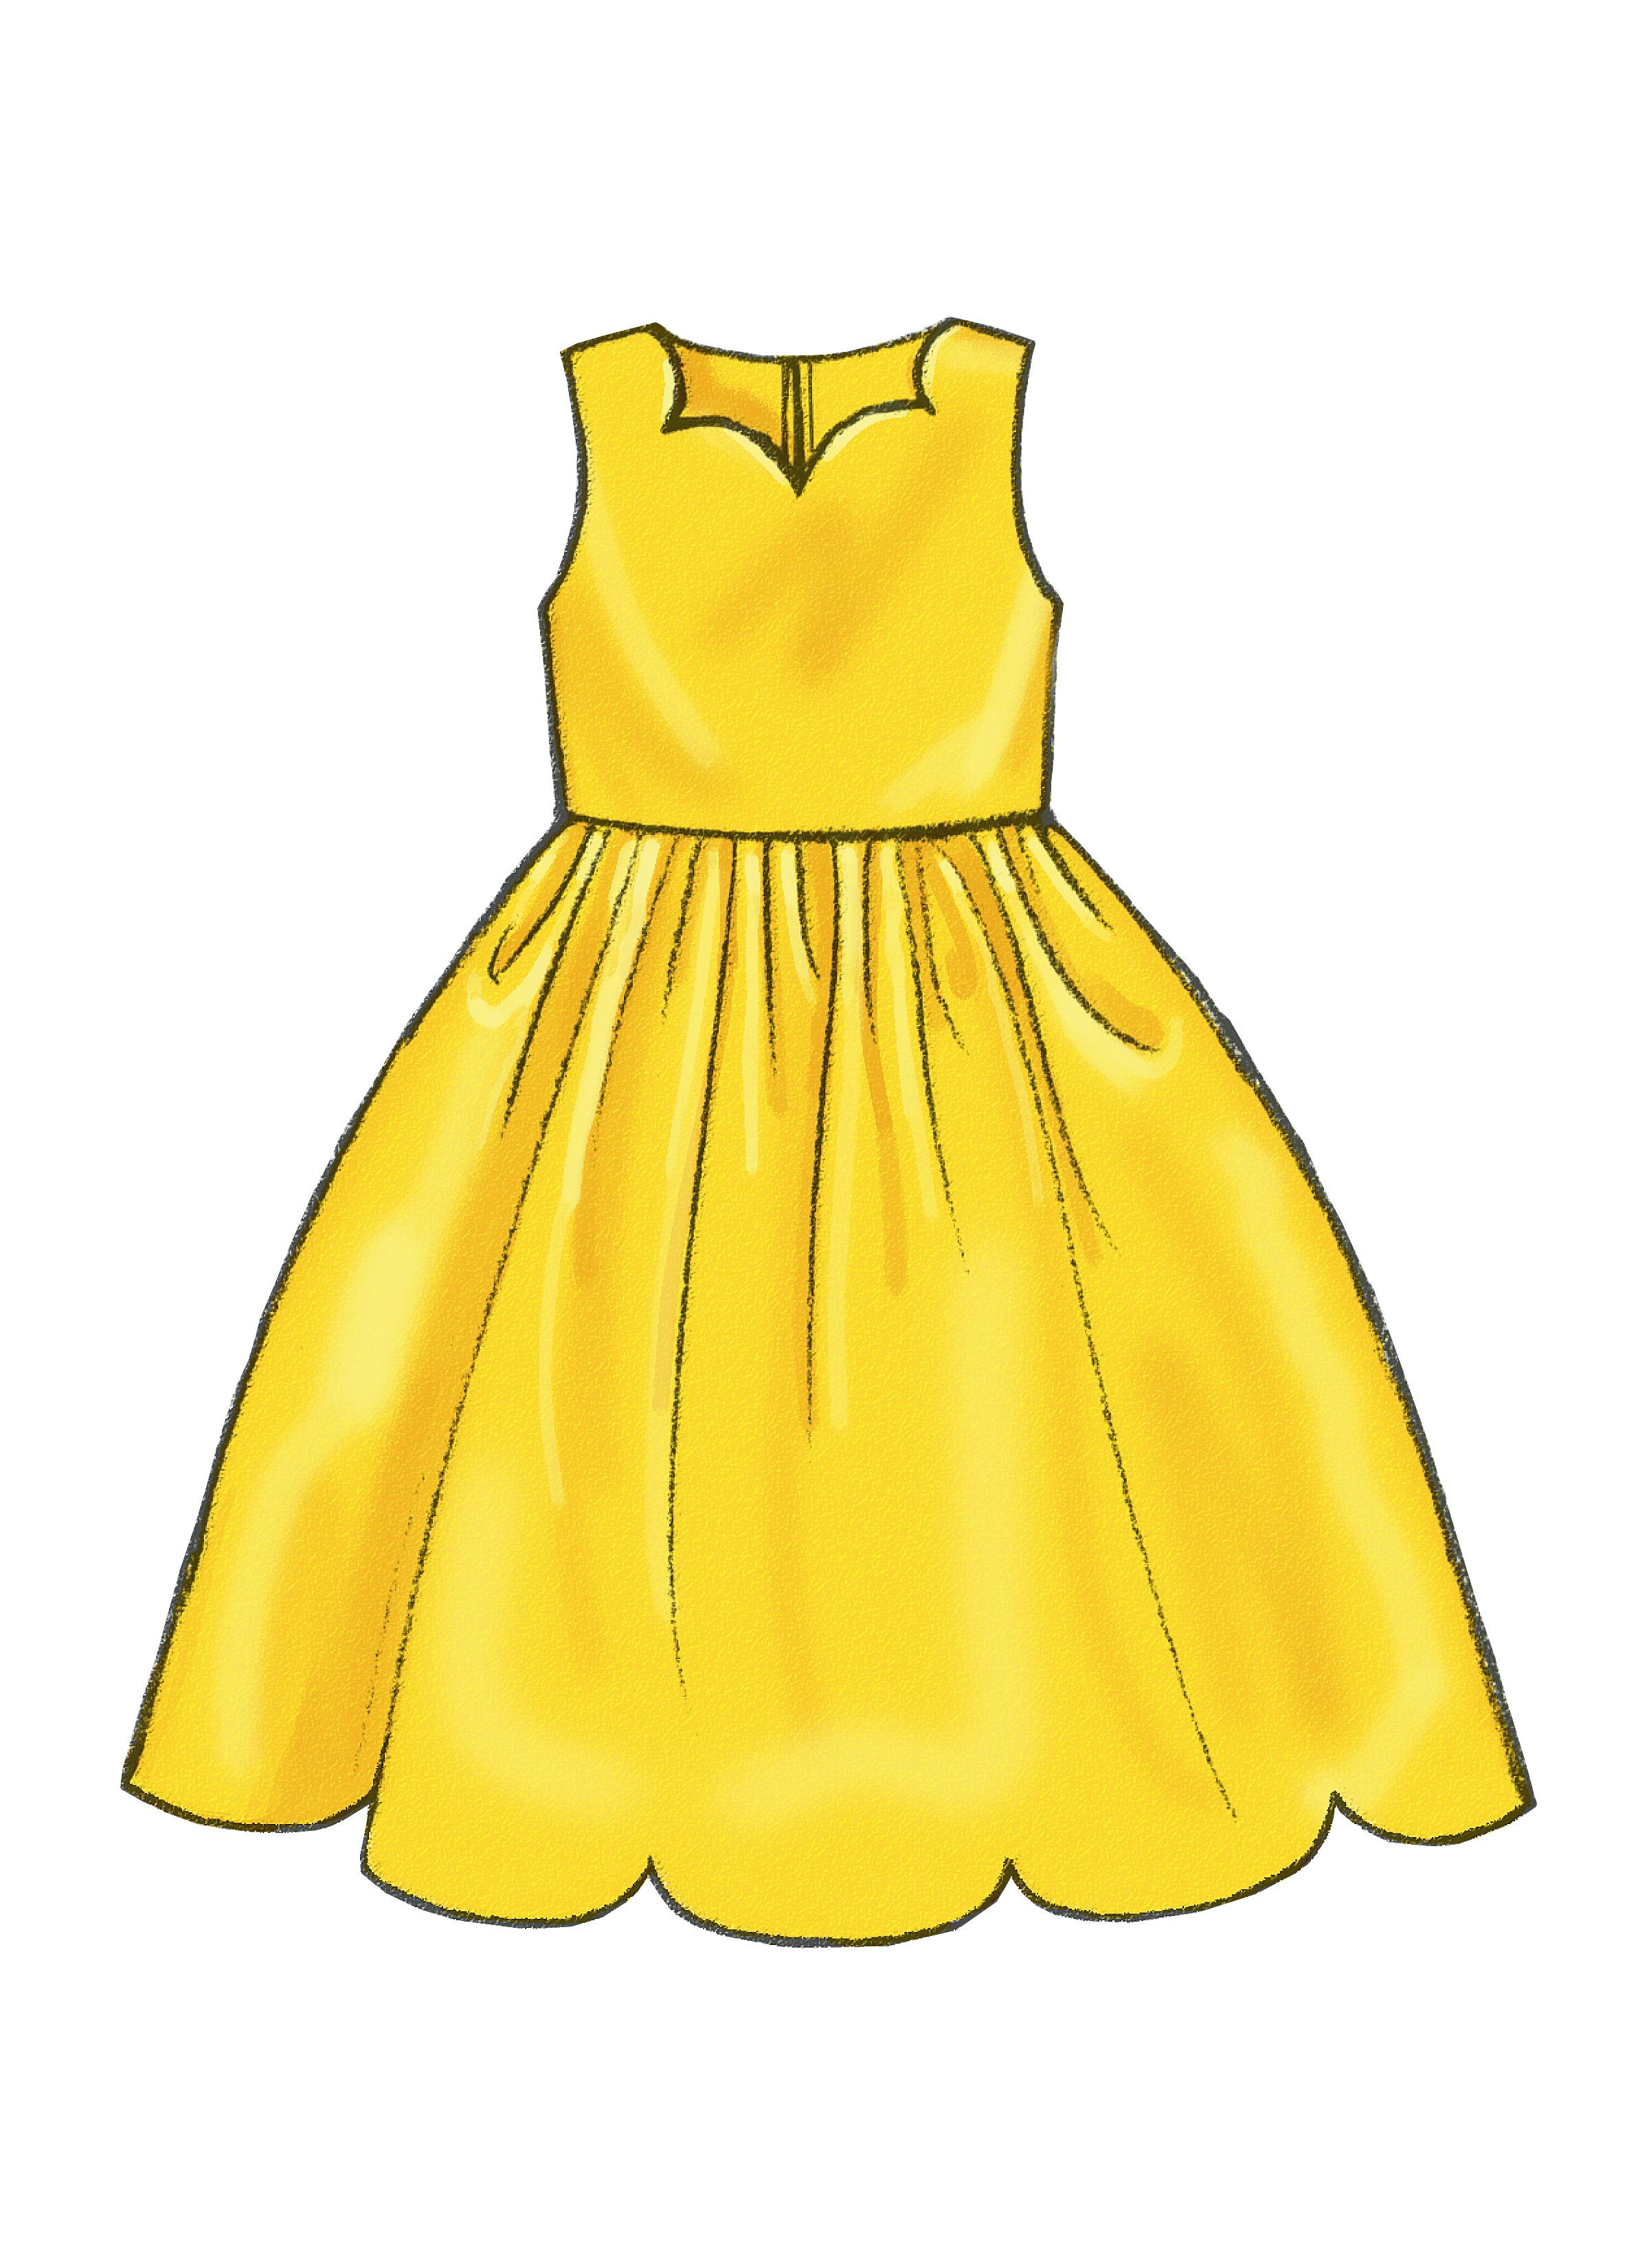 Butterick B3350 Children's/Girls' Dress